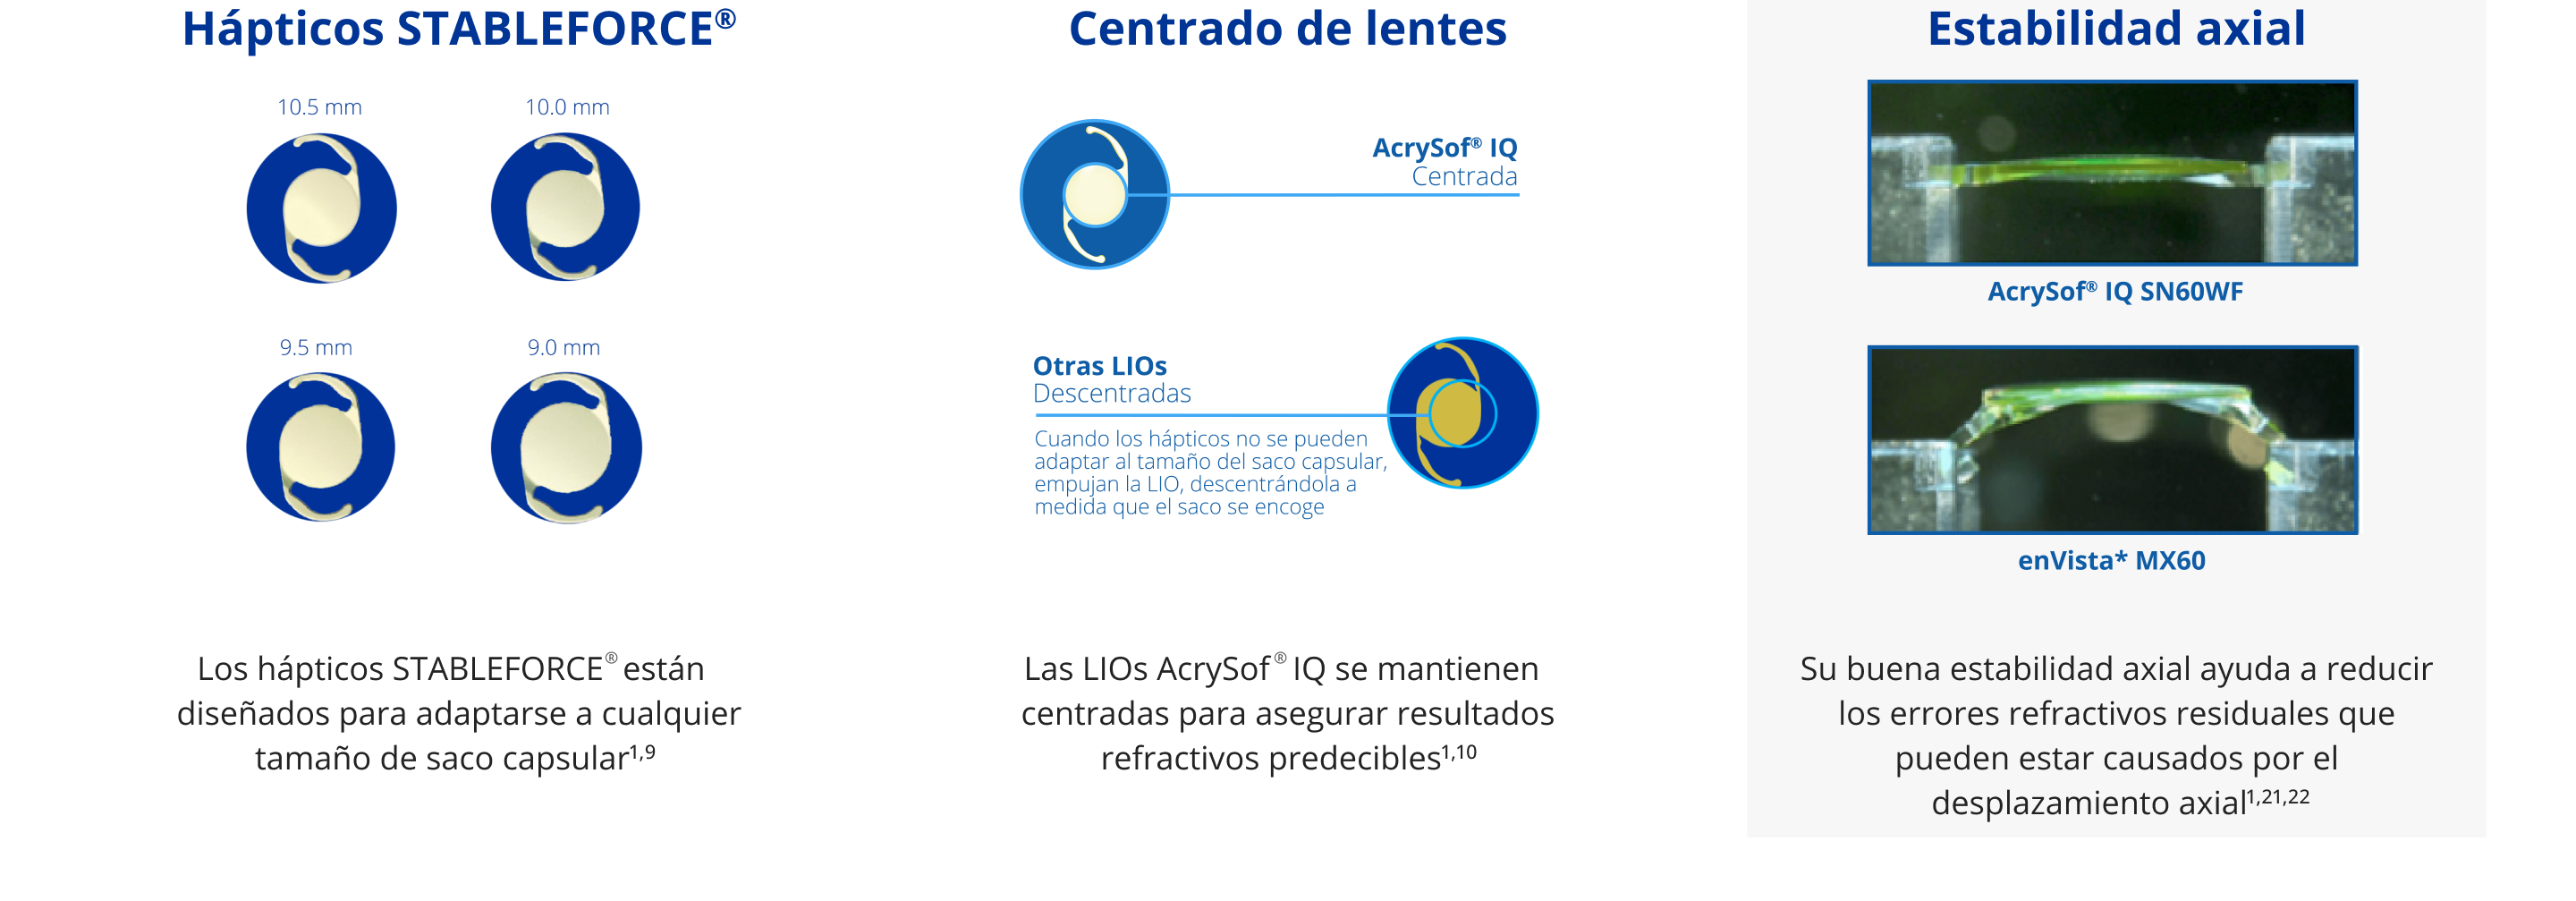 Ilustración que muestra cómo permiten los hápticos STABLEFORCE que las LIOs AcrySof IQ se adapten a cualquier tamaño de saco capsular: 10,5 mm, 10,0 mm, 9,5 mm, 9,0 mm. Dos ilustraciones. La primera es una ilustración de la LIO AcrySof IQ. Hay un círculo azul claro situado en el centro de la LIO para llamar la atención. Una línea azul claro está conectada con la LIO con un texto que dice: “AcrySof IQ Centrada”. La segunda es una ilustración de otra LIO genérica. Una línea azul claro está conectada con la LIO con un texto que dice: “Otra LIO Descentrada”.  Abajo, un texto en letra más pequeña dice: “Cuando los hápticos no se pueden adaptar al tamaño del saco, empujan a la LIO, descentrándola a medida que el saco encoge”. 2 imágenes que ilustran la mayor estabilidad axial de la LIO AcrySof IQ respecto a enVisto MX60, lo que ayuda a reducir los errores refractivos.